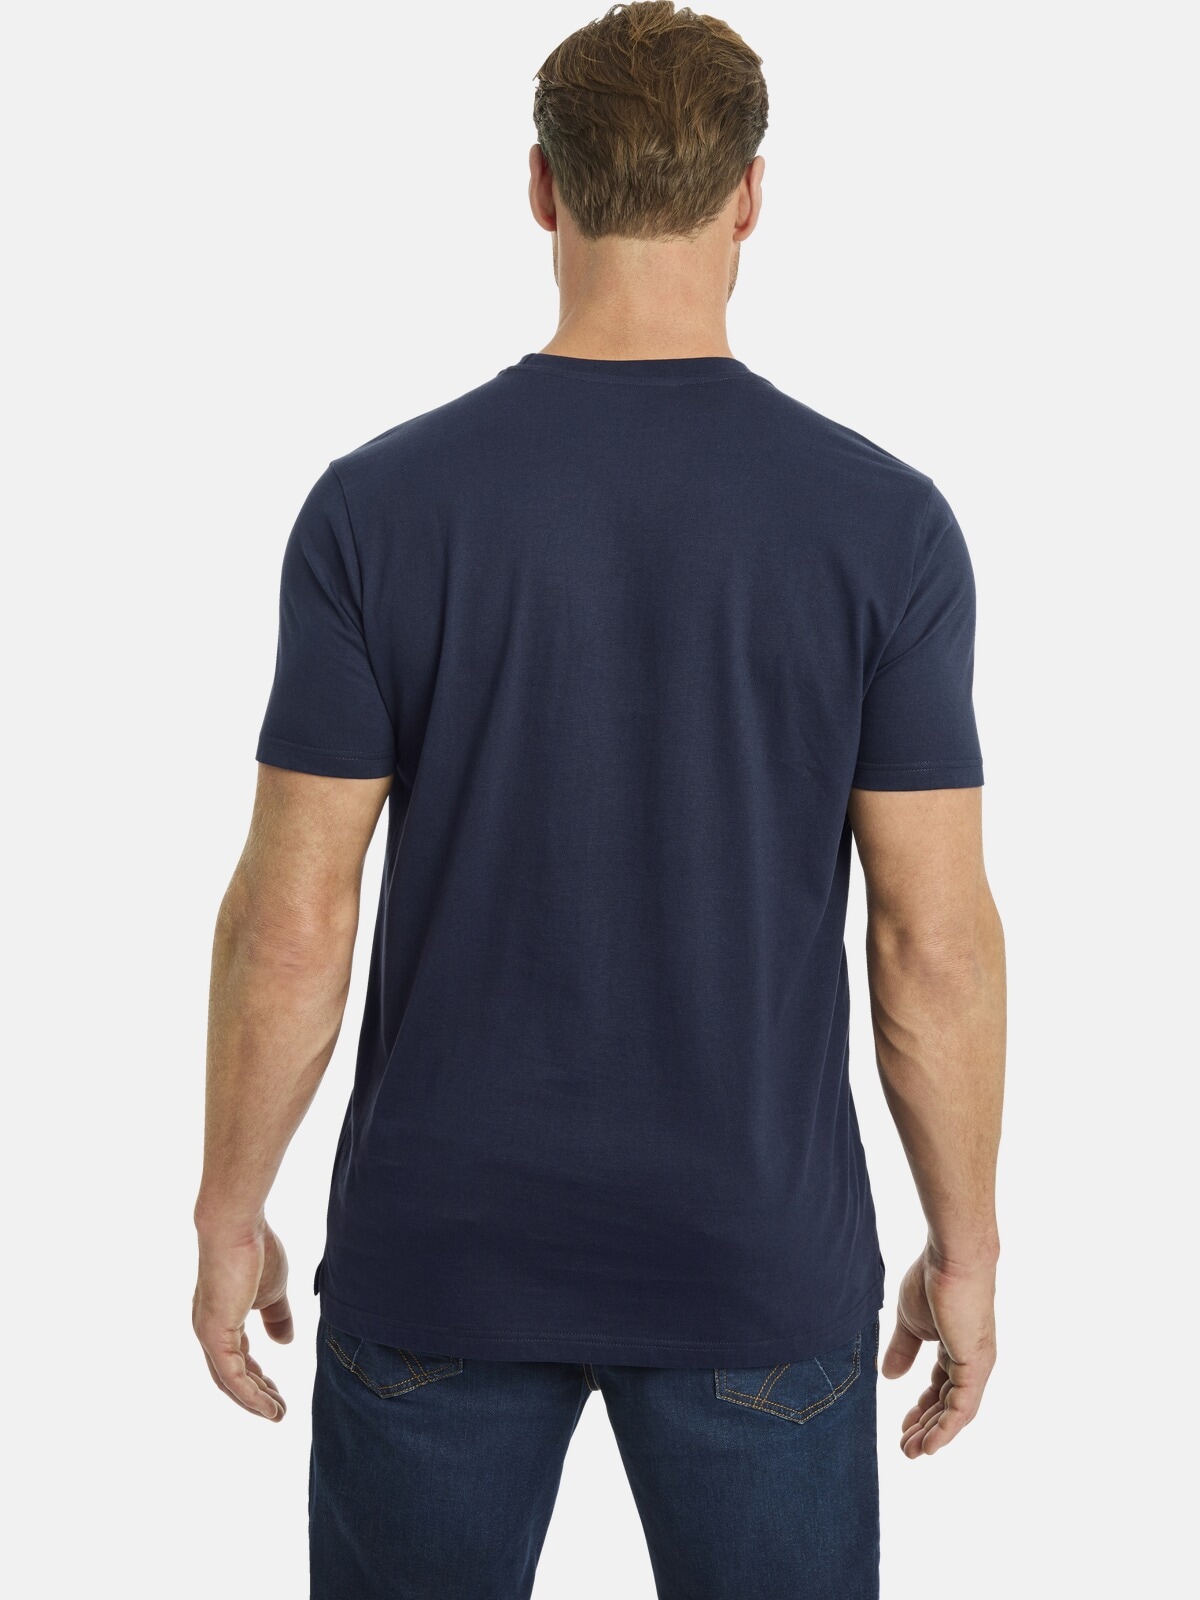 Jan Vanderstorm Rundhalsshirt »T-Shirt BERGTHOR«, mit großem Schriftzug-Aufdruck